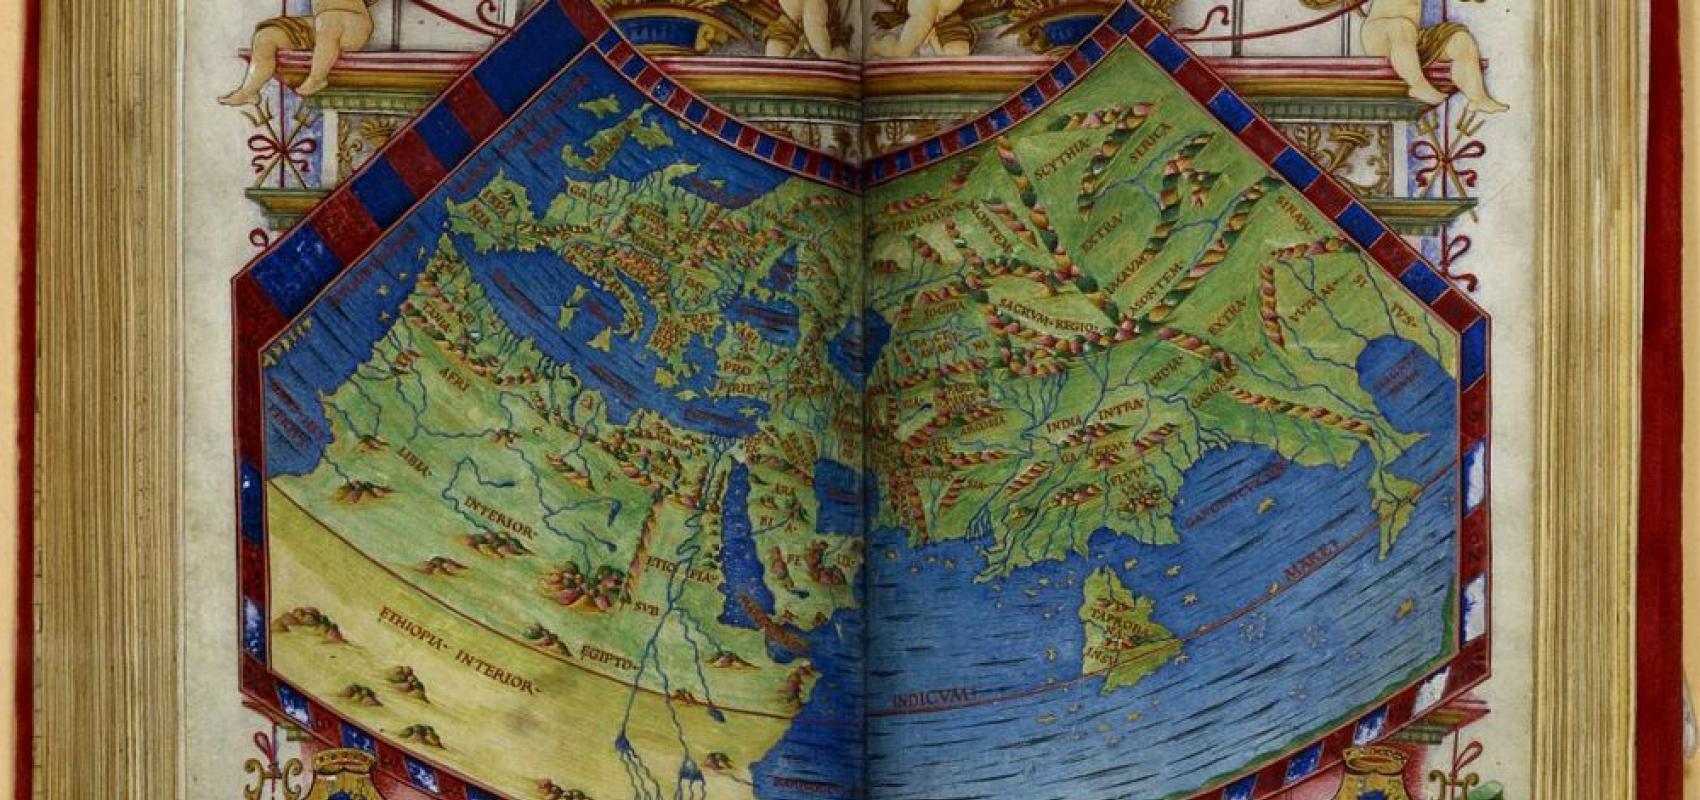 Mappemonde extraite de la « Cosmographie », Claude Ptolémée, Claude Ptolémée, traduction latine par Jacopo d'Angelo, Naples, 1490. BnF, département des Manuscrits -  - BnF